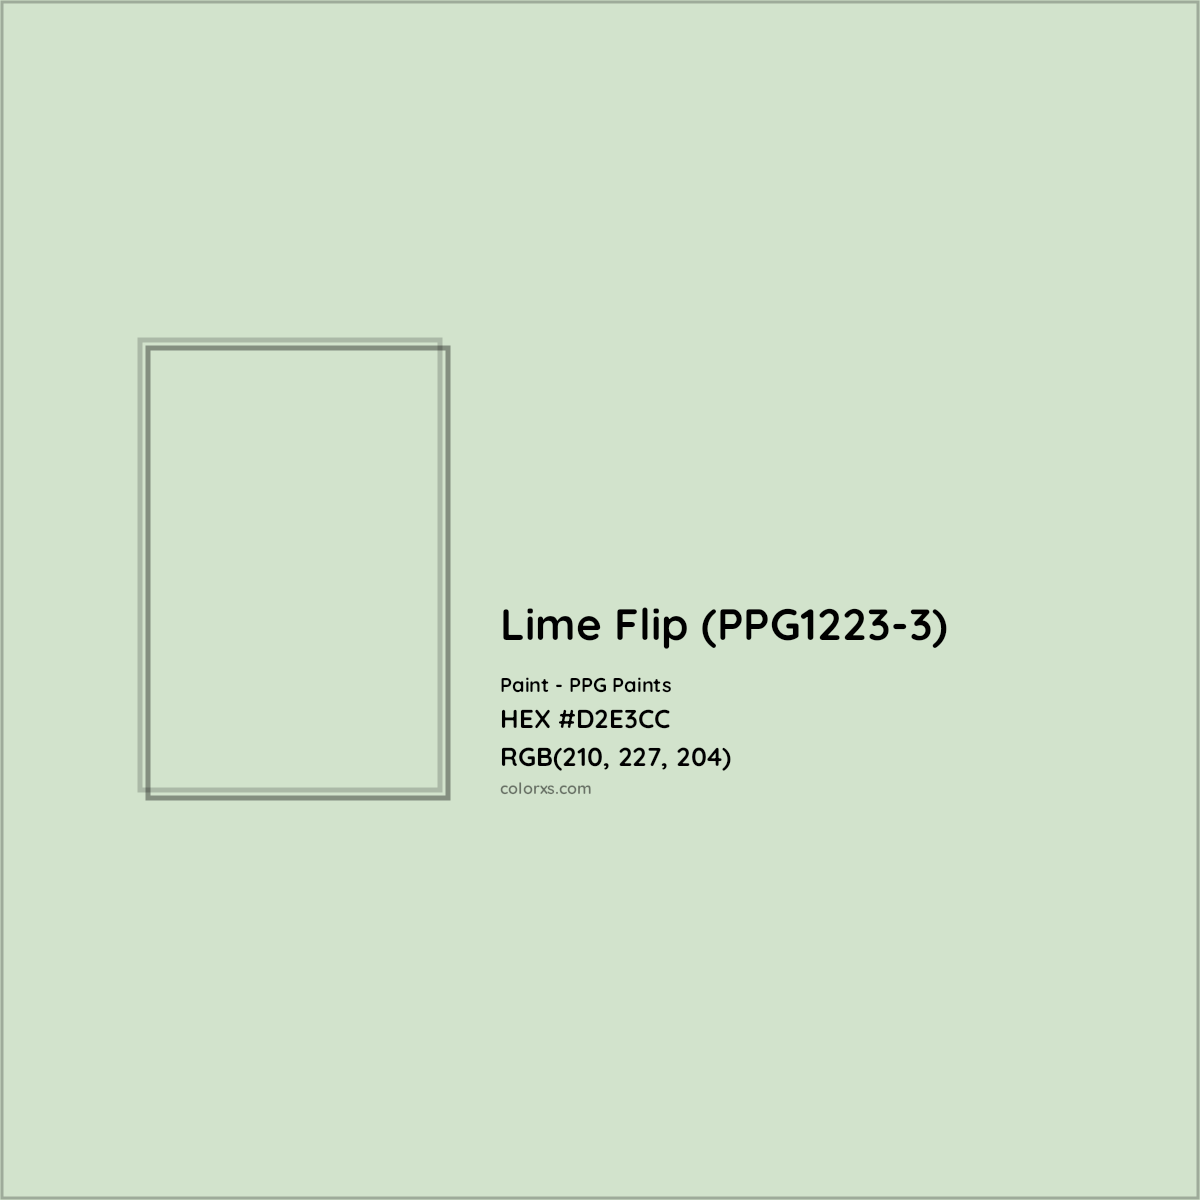 HEX #D2E3CC Lime Flip (PPG1223-3) Paint PPG Paints - Color Code